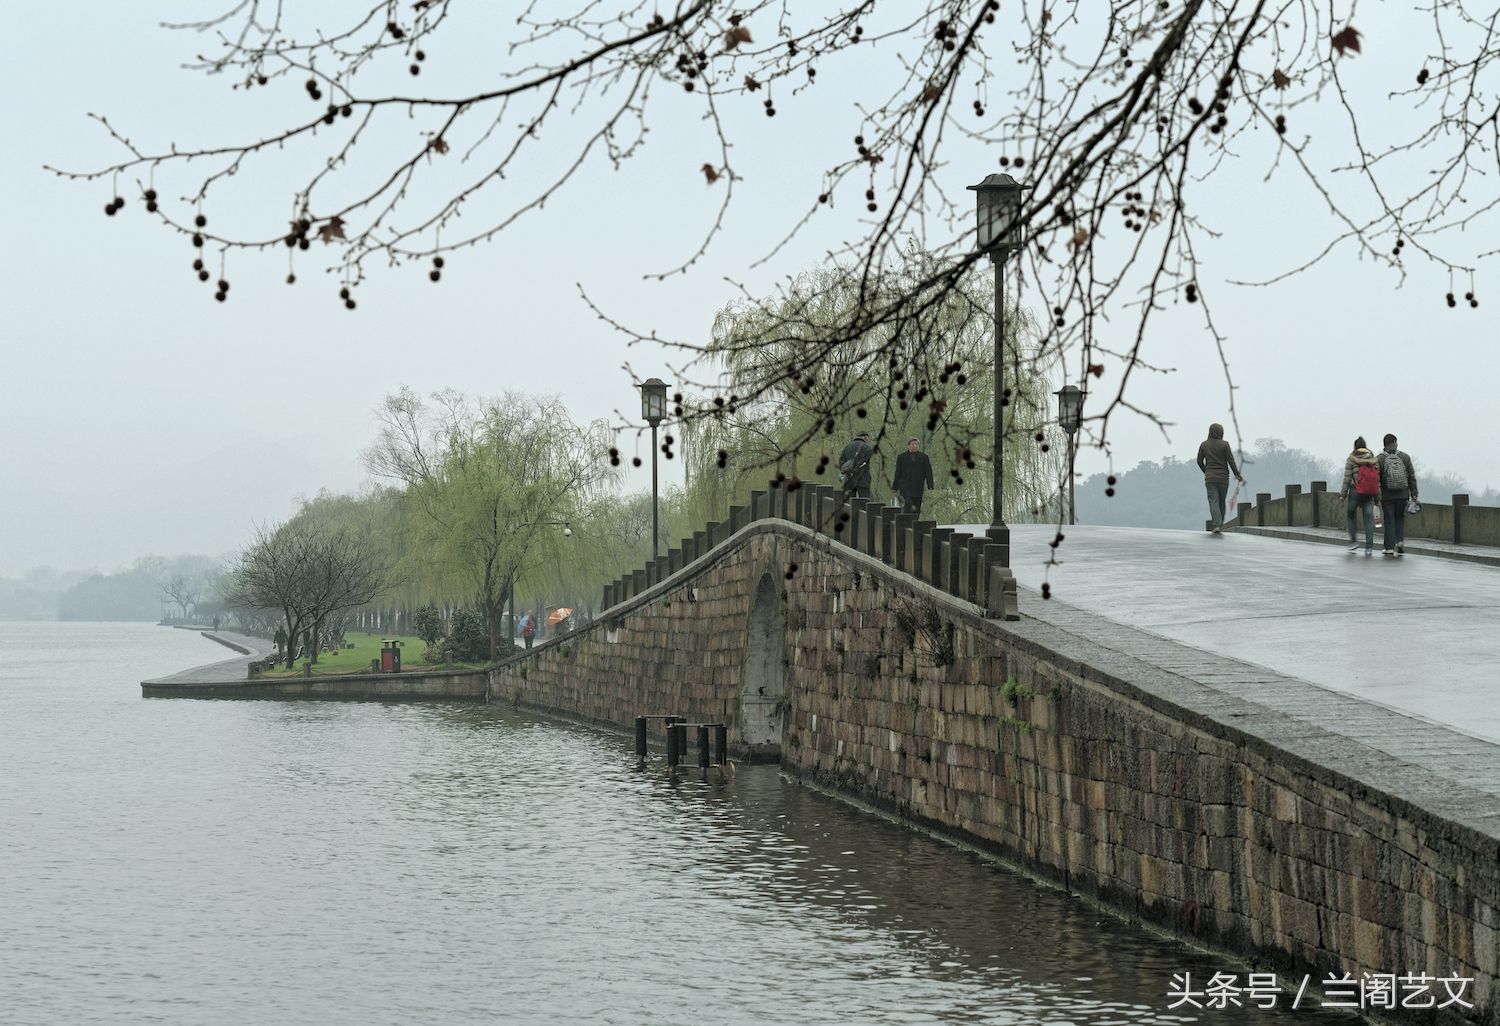 上世纪90年代初,一部《新白娘子传奇》热播全国,杭州西湖的白堤,断桥